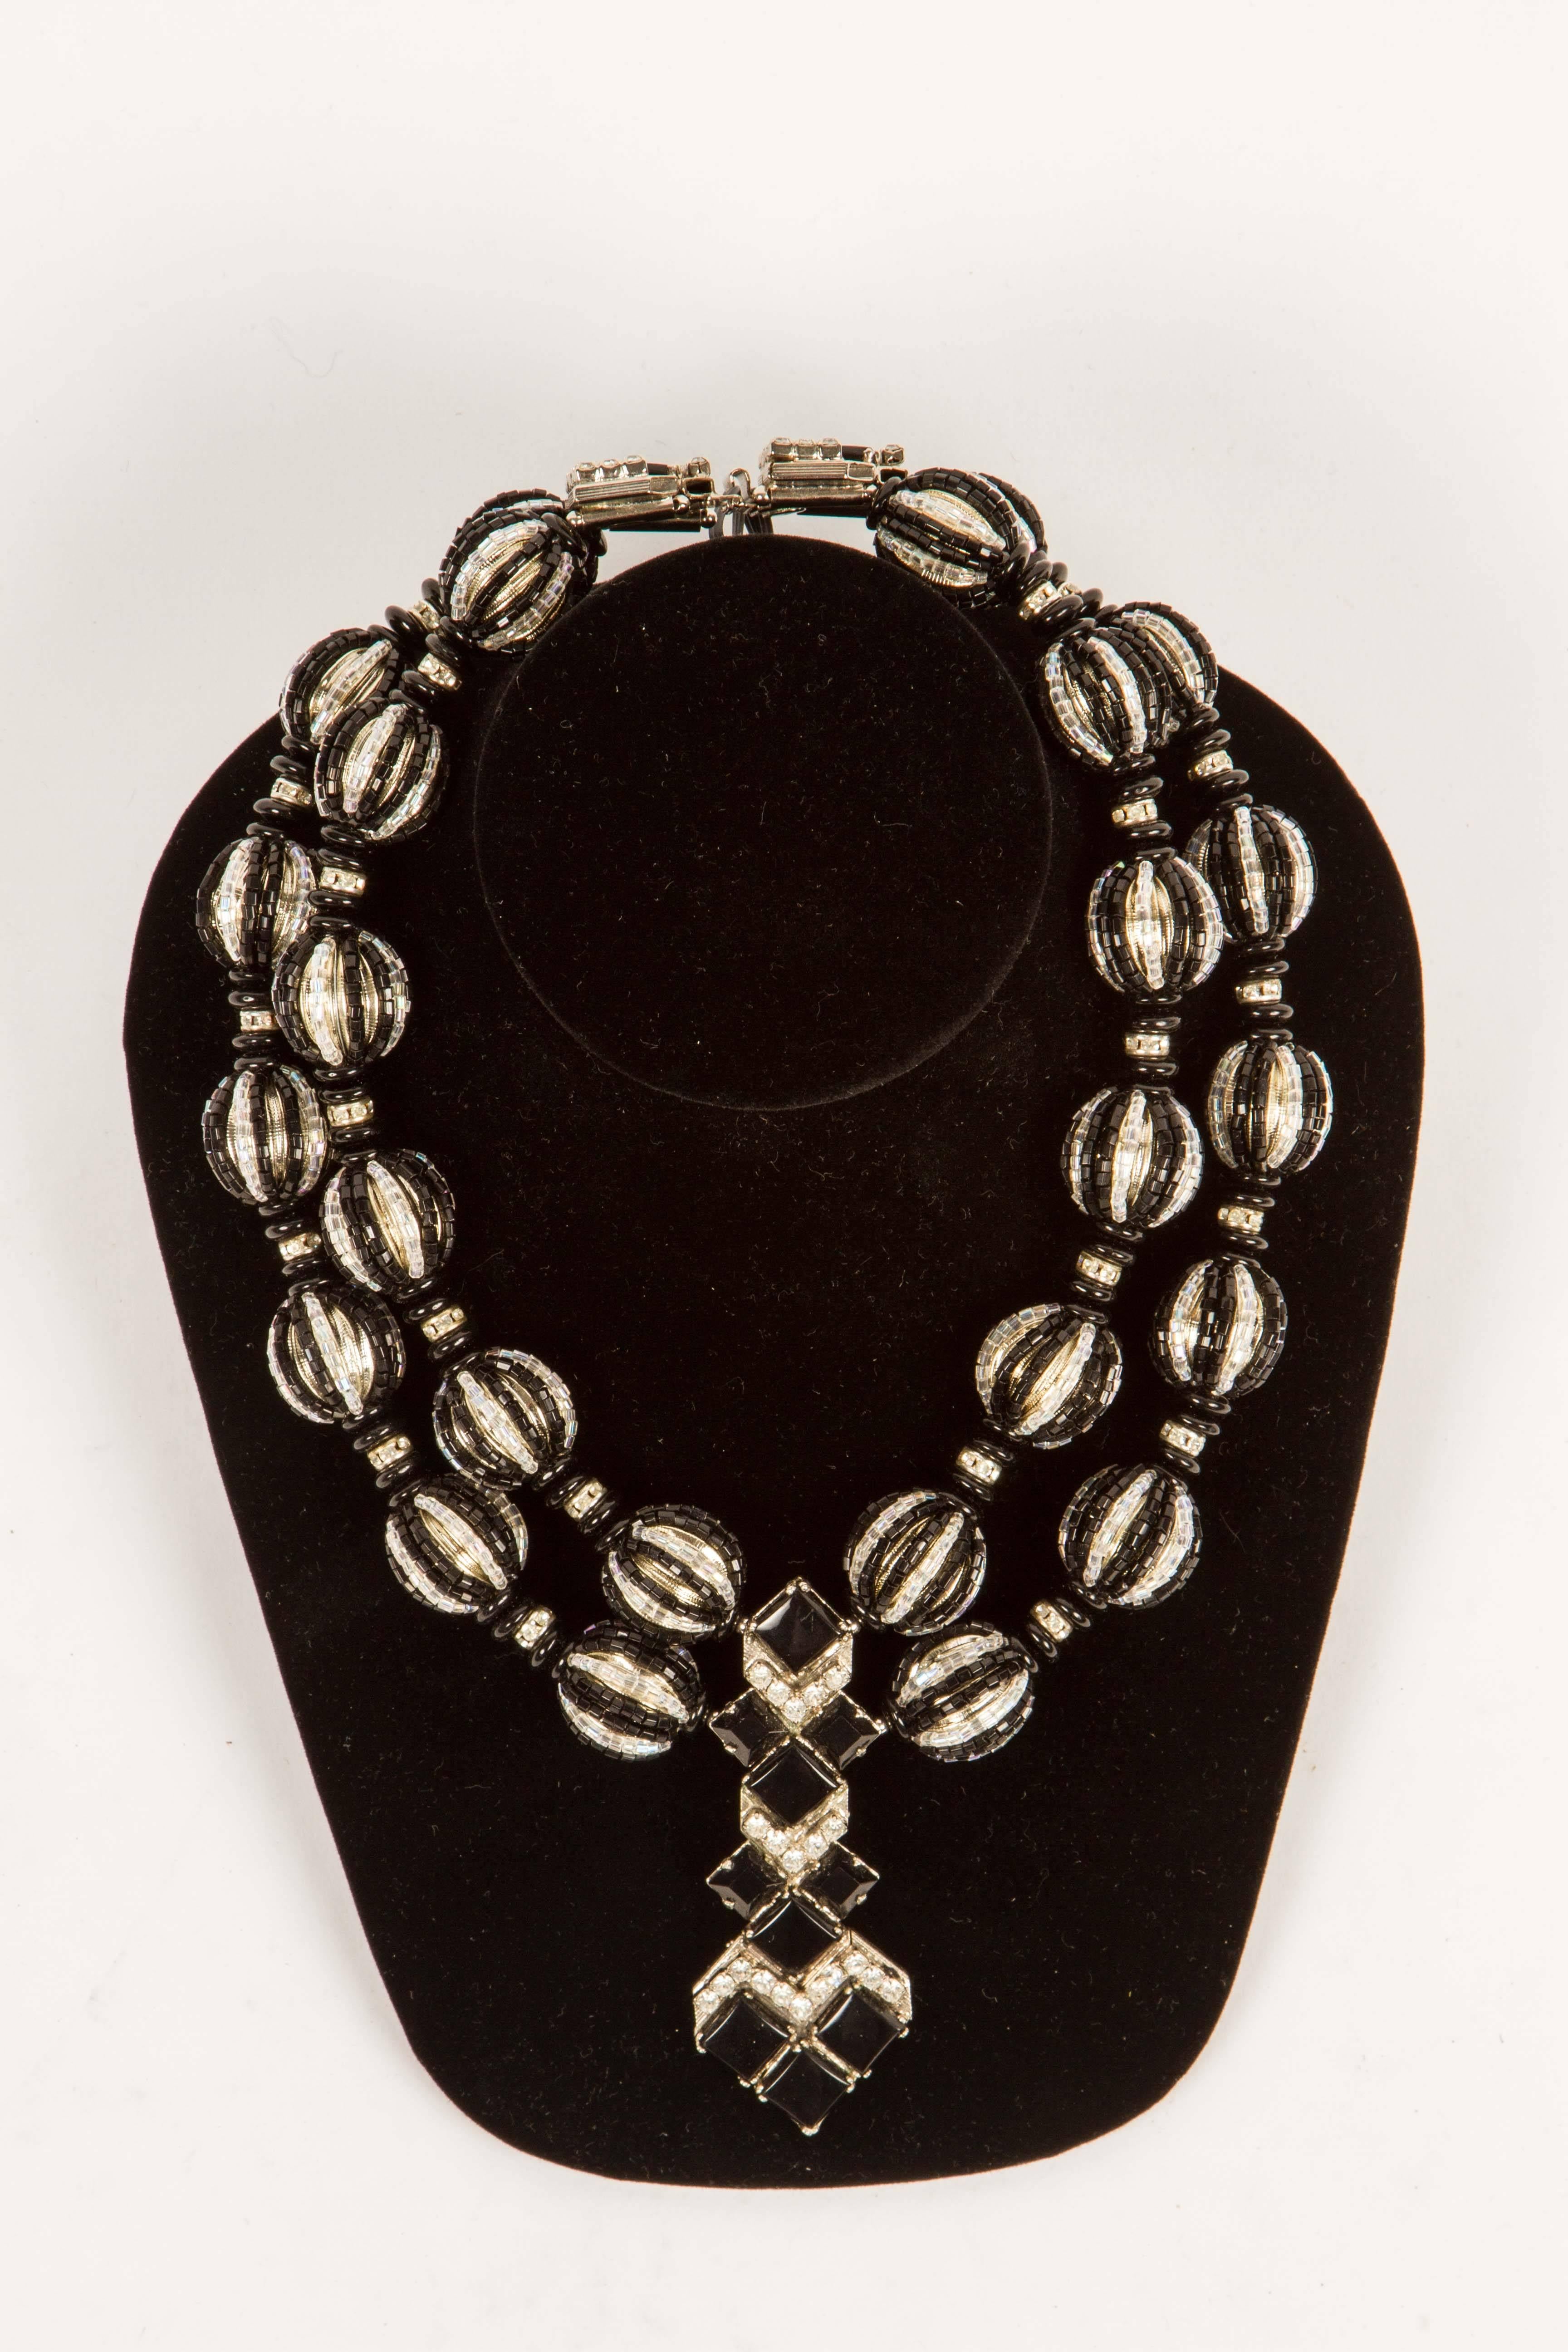 Ce collier d'inspiration Art déco, un look revival populaire dans les années 1970, est un véritable coup de cœur. L'onyx et le cristal sont sertis dans un métal argenté.  Des perles rondes en métal sont recouvertes de perles en cristal noir et clair